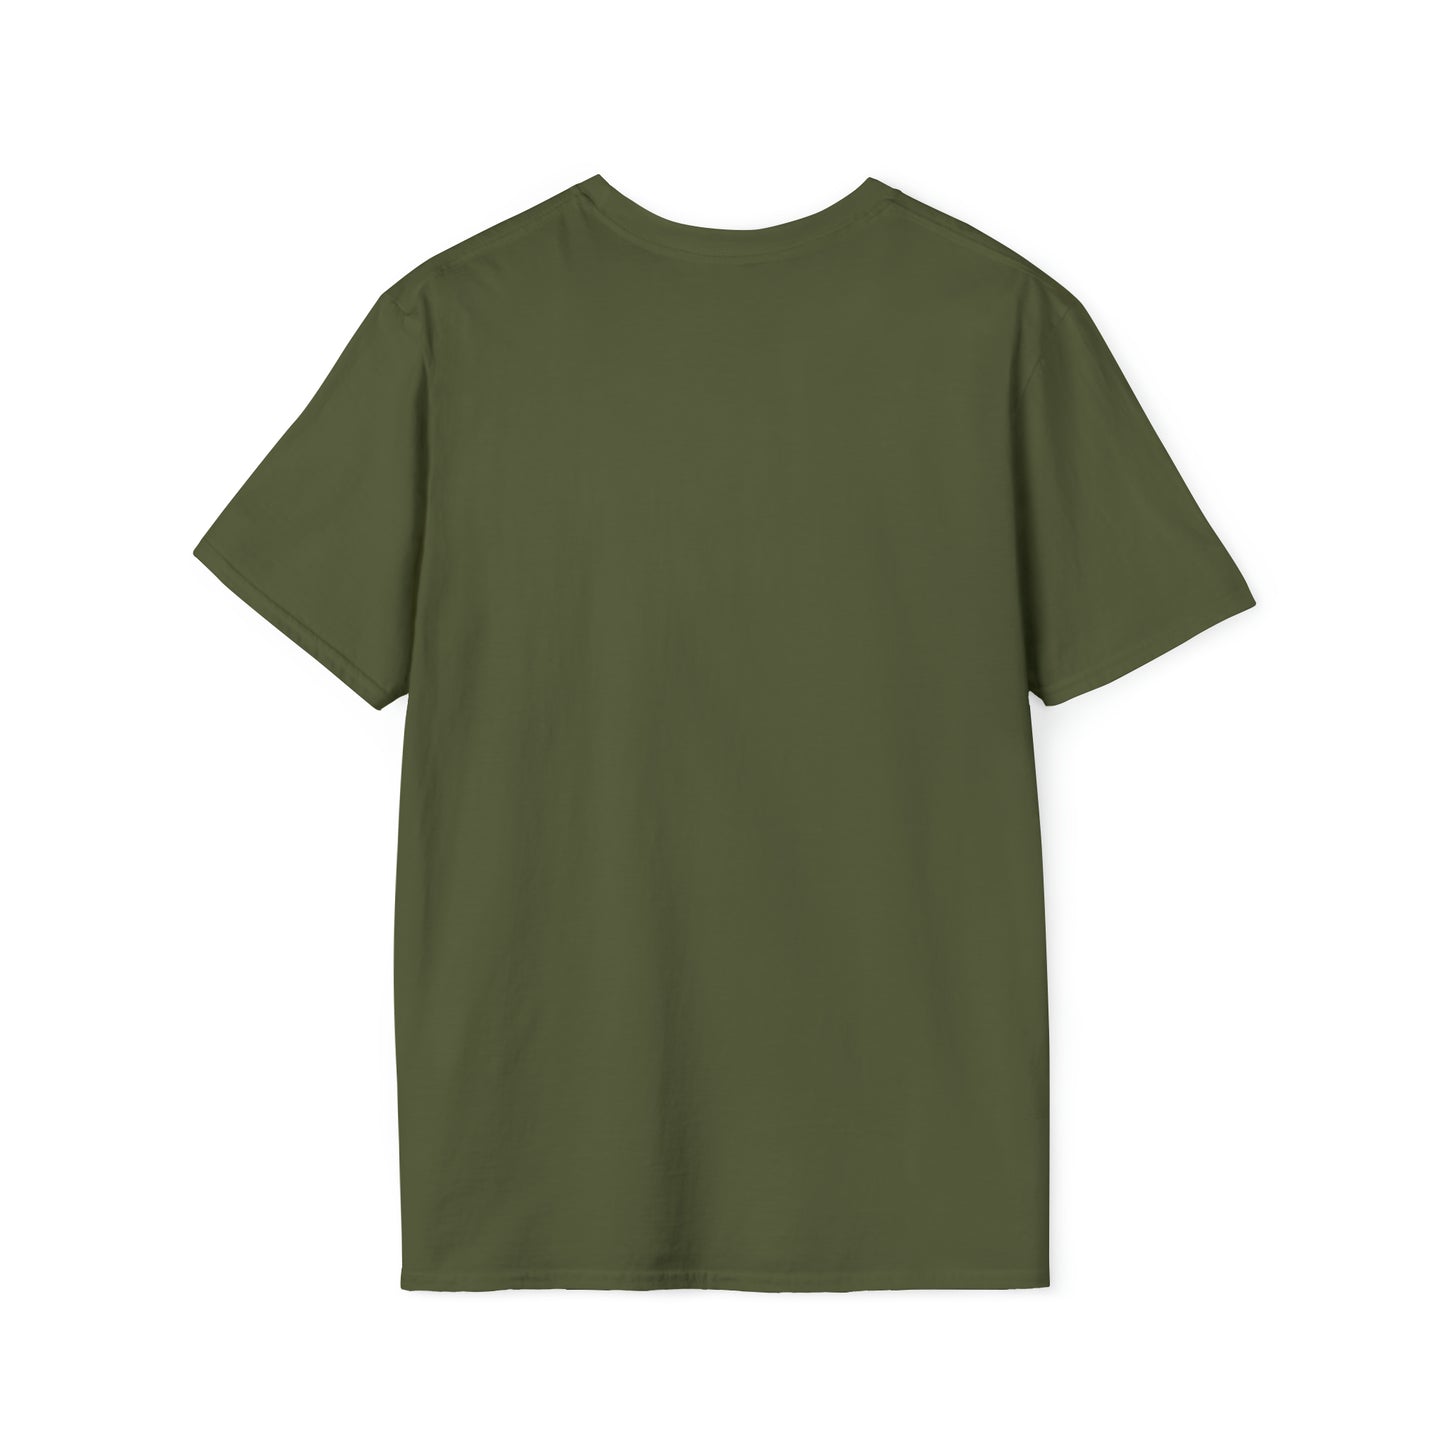 ASVAB Waver - T-Shirt